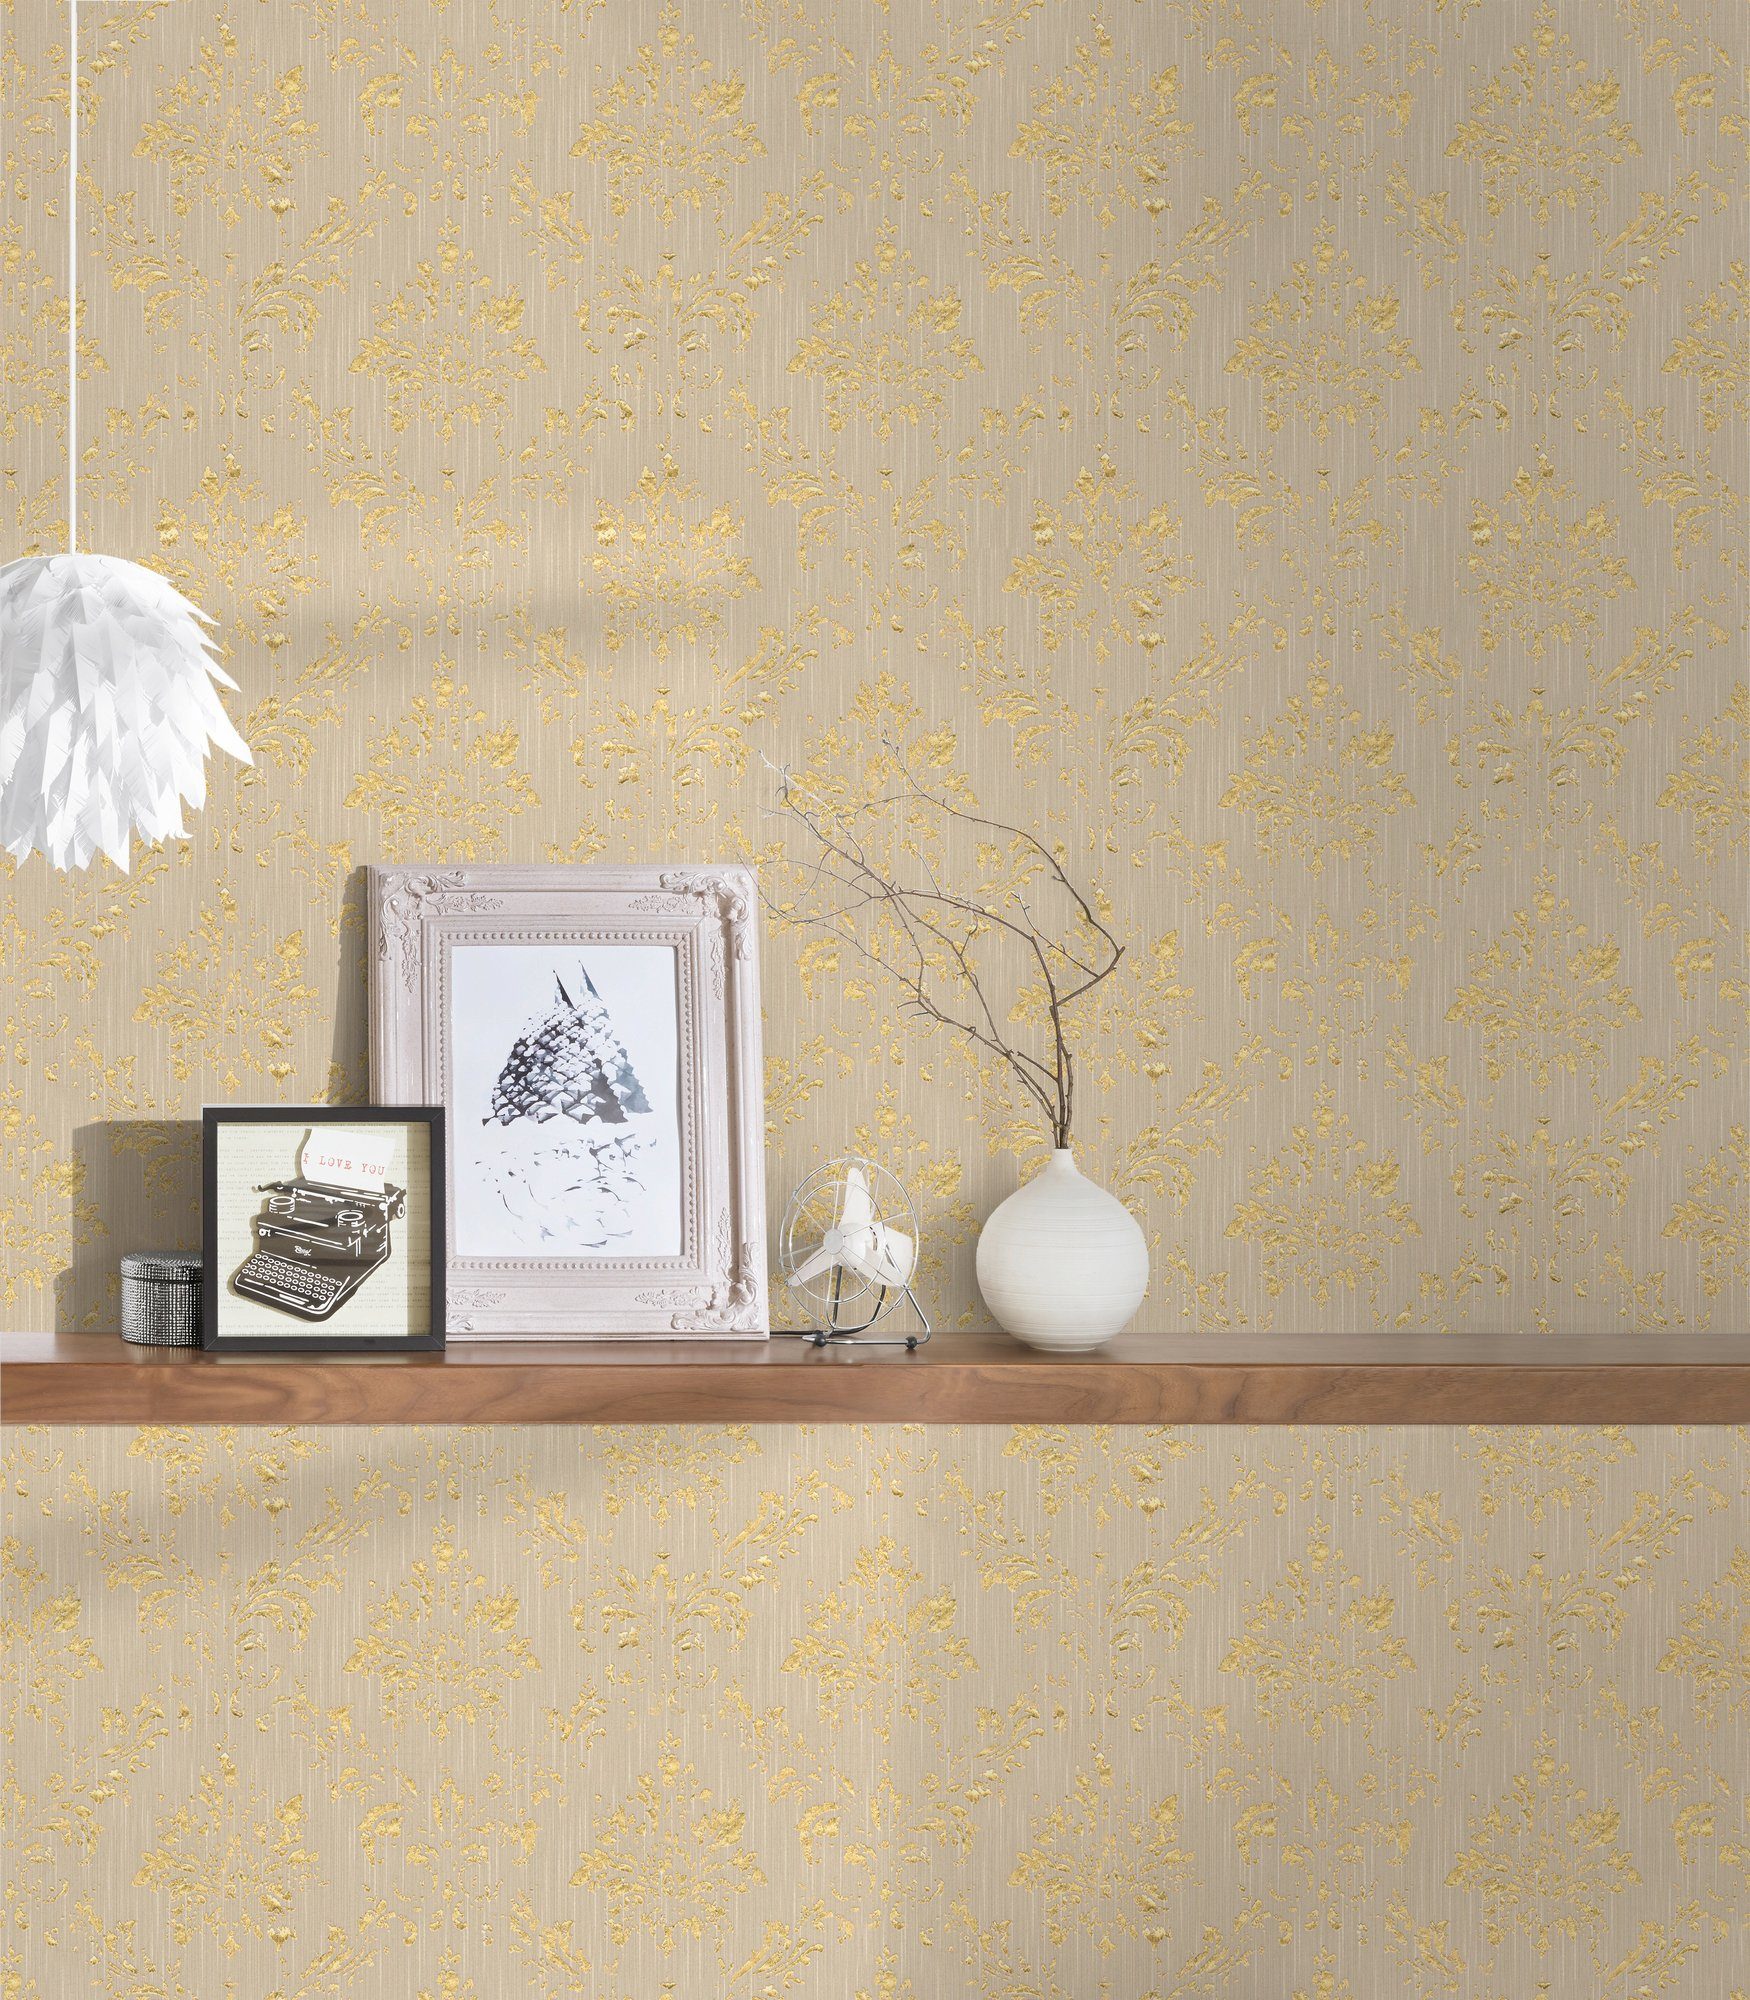 Textiltapete Silk, Paper beige/gold Création Barock glänzend, Ornament A.S. matt, samtig, Tapete Architects Metallic Barock,